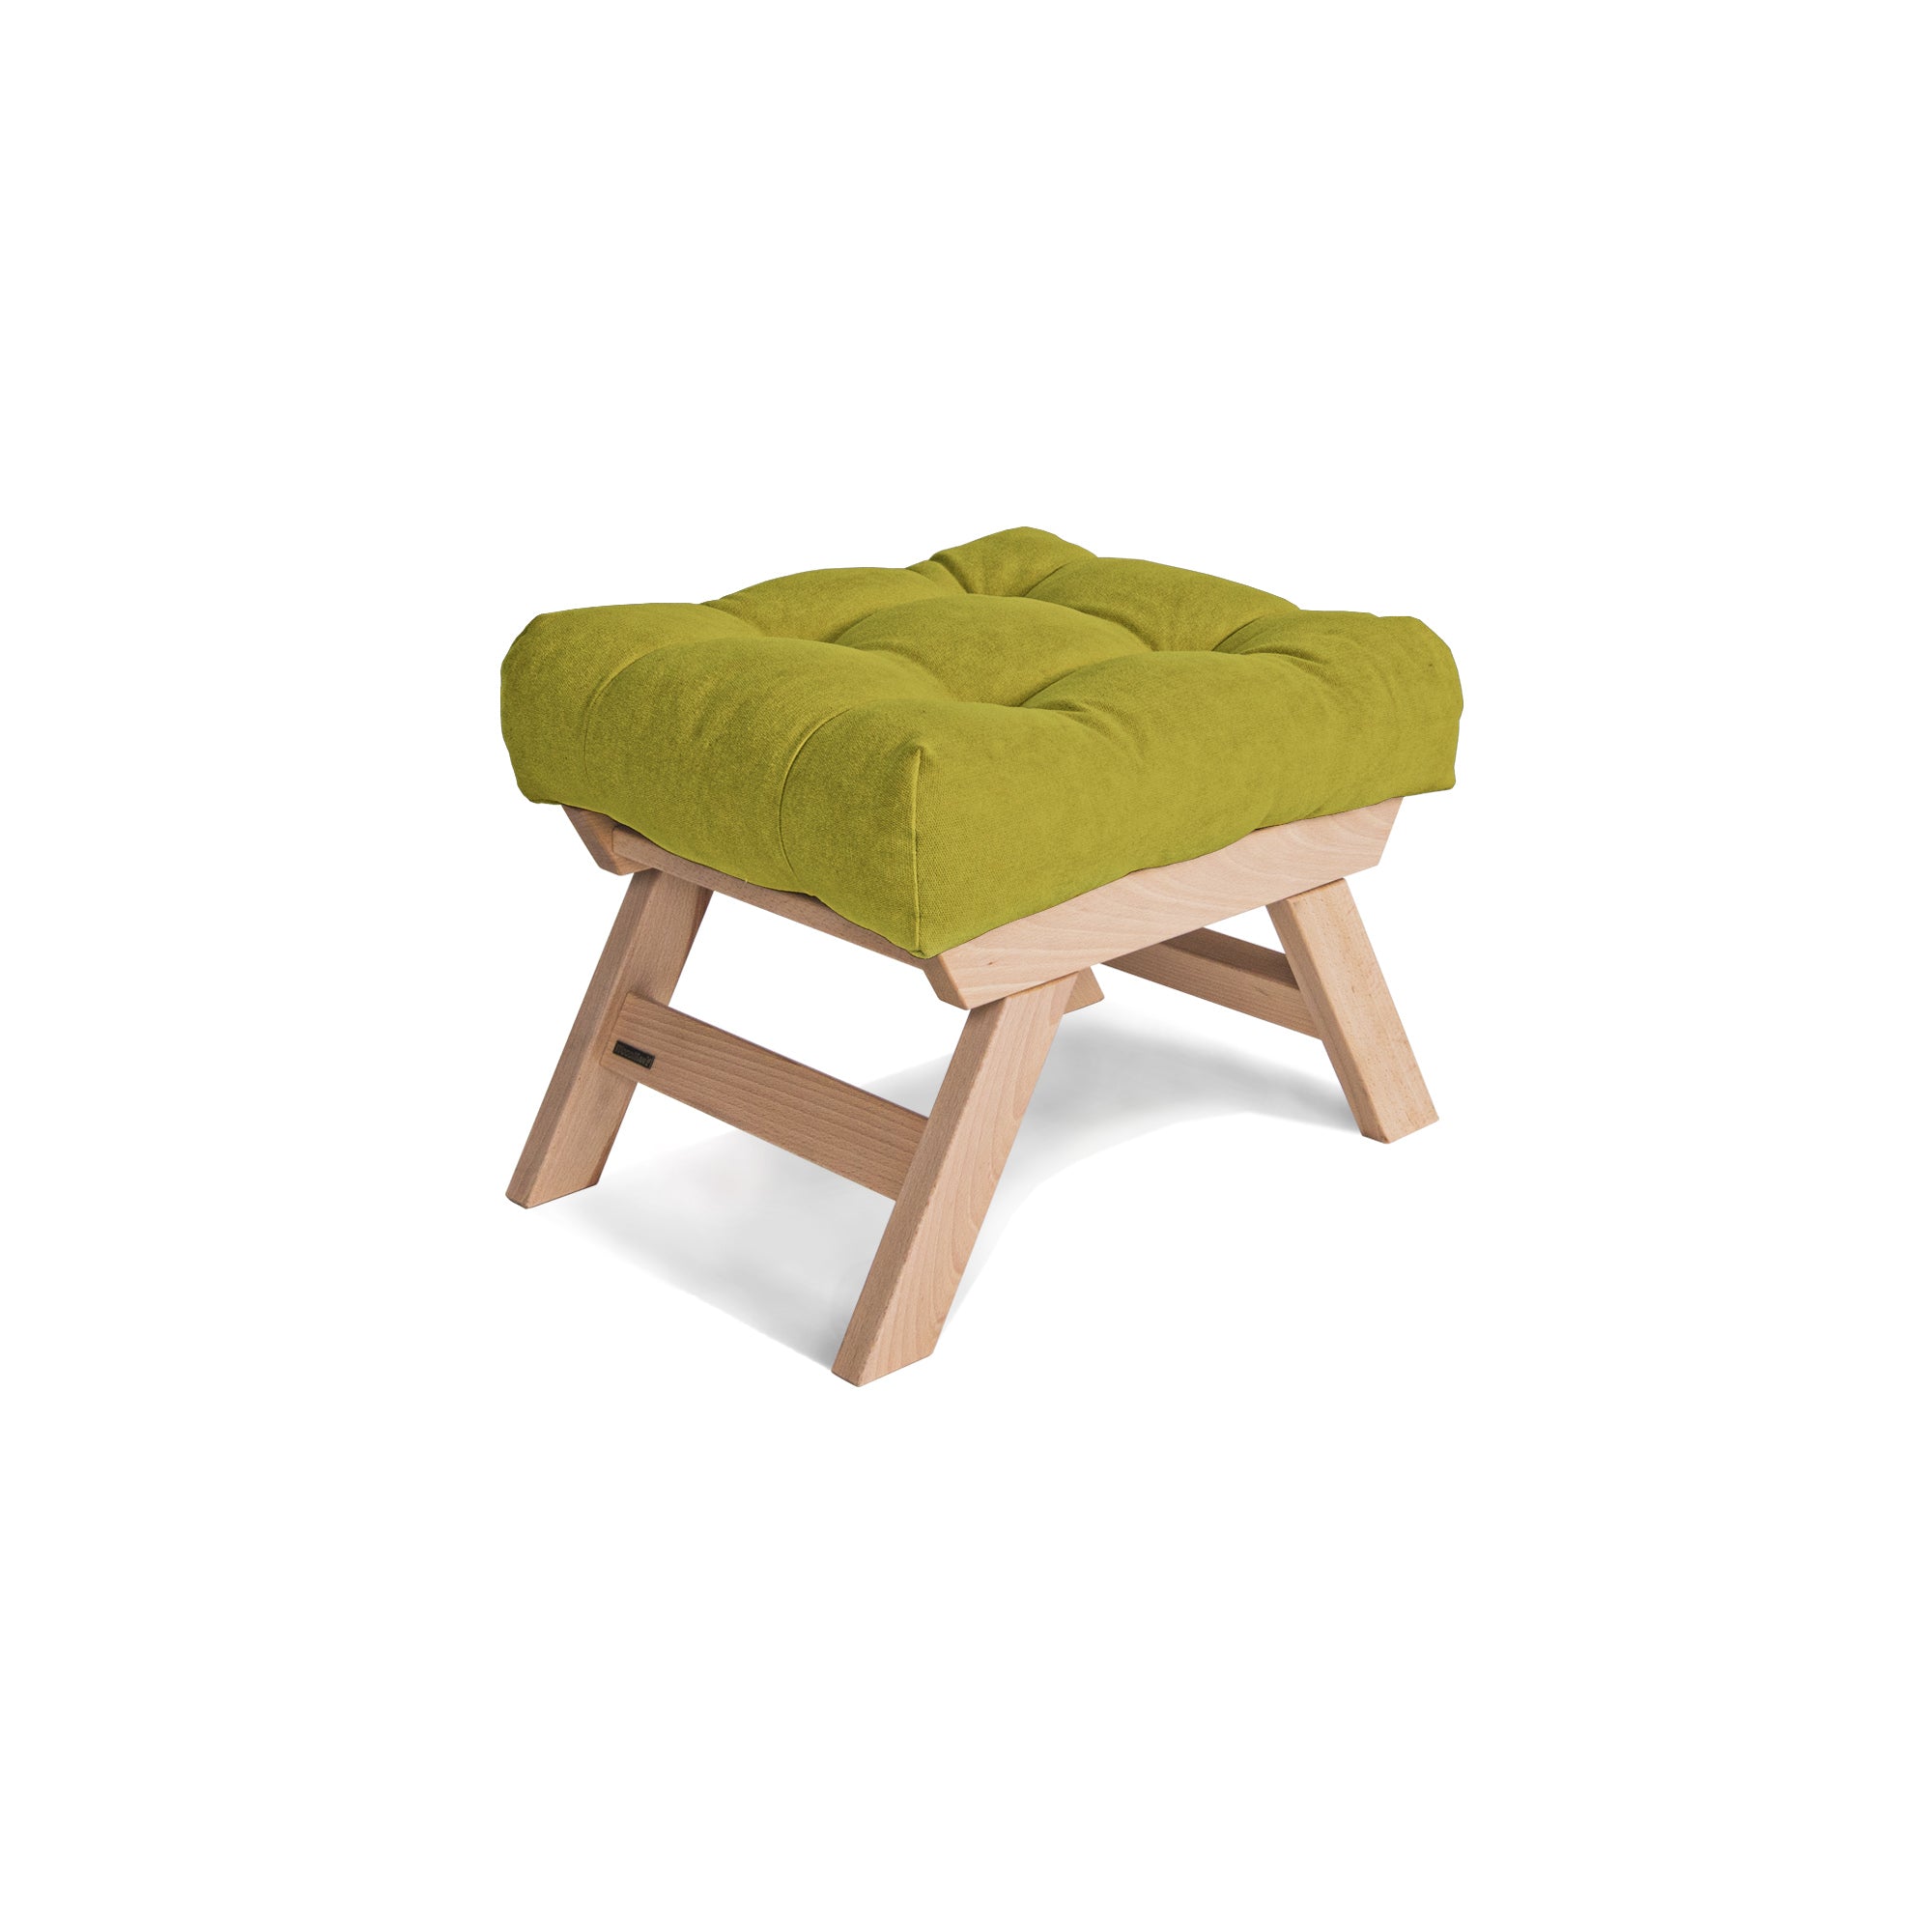 ALLEGRO Pouffe, Beech Wood upholstery colour green